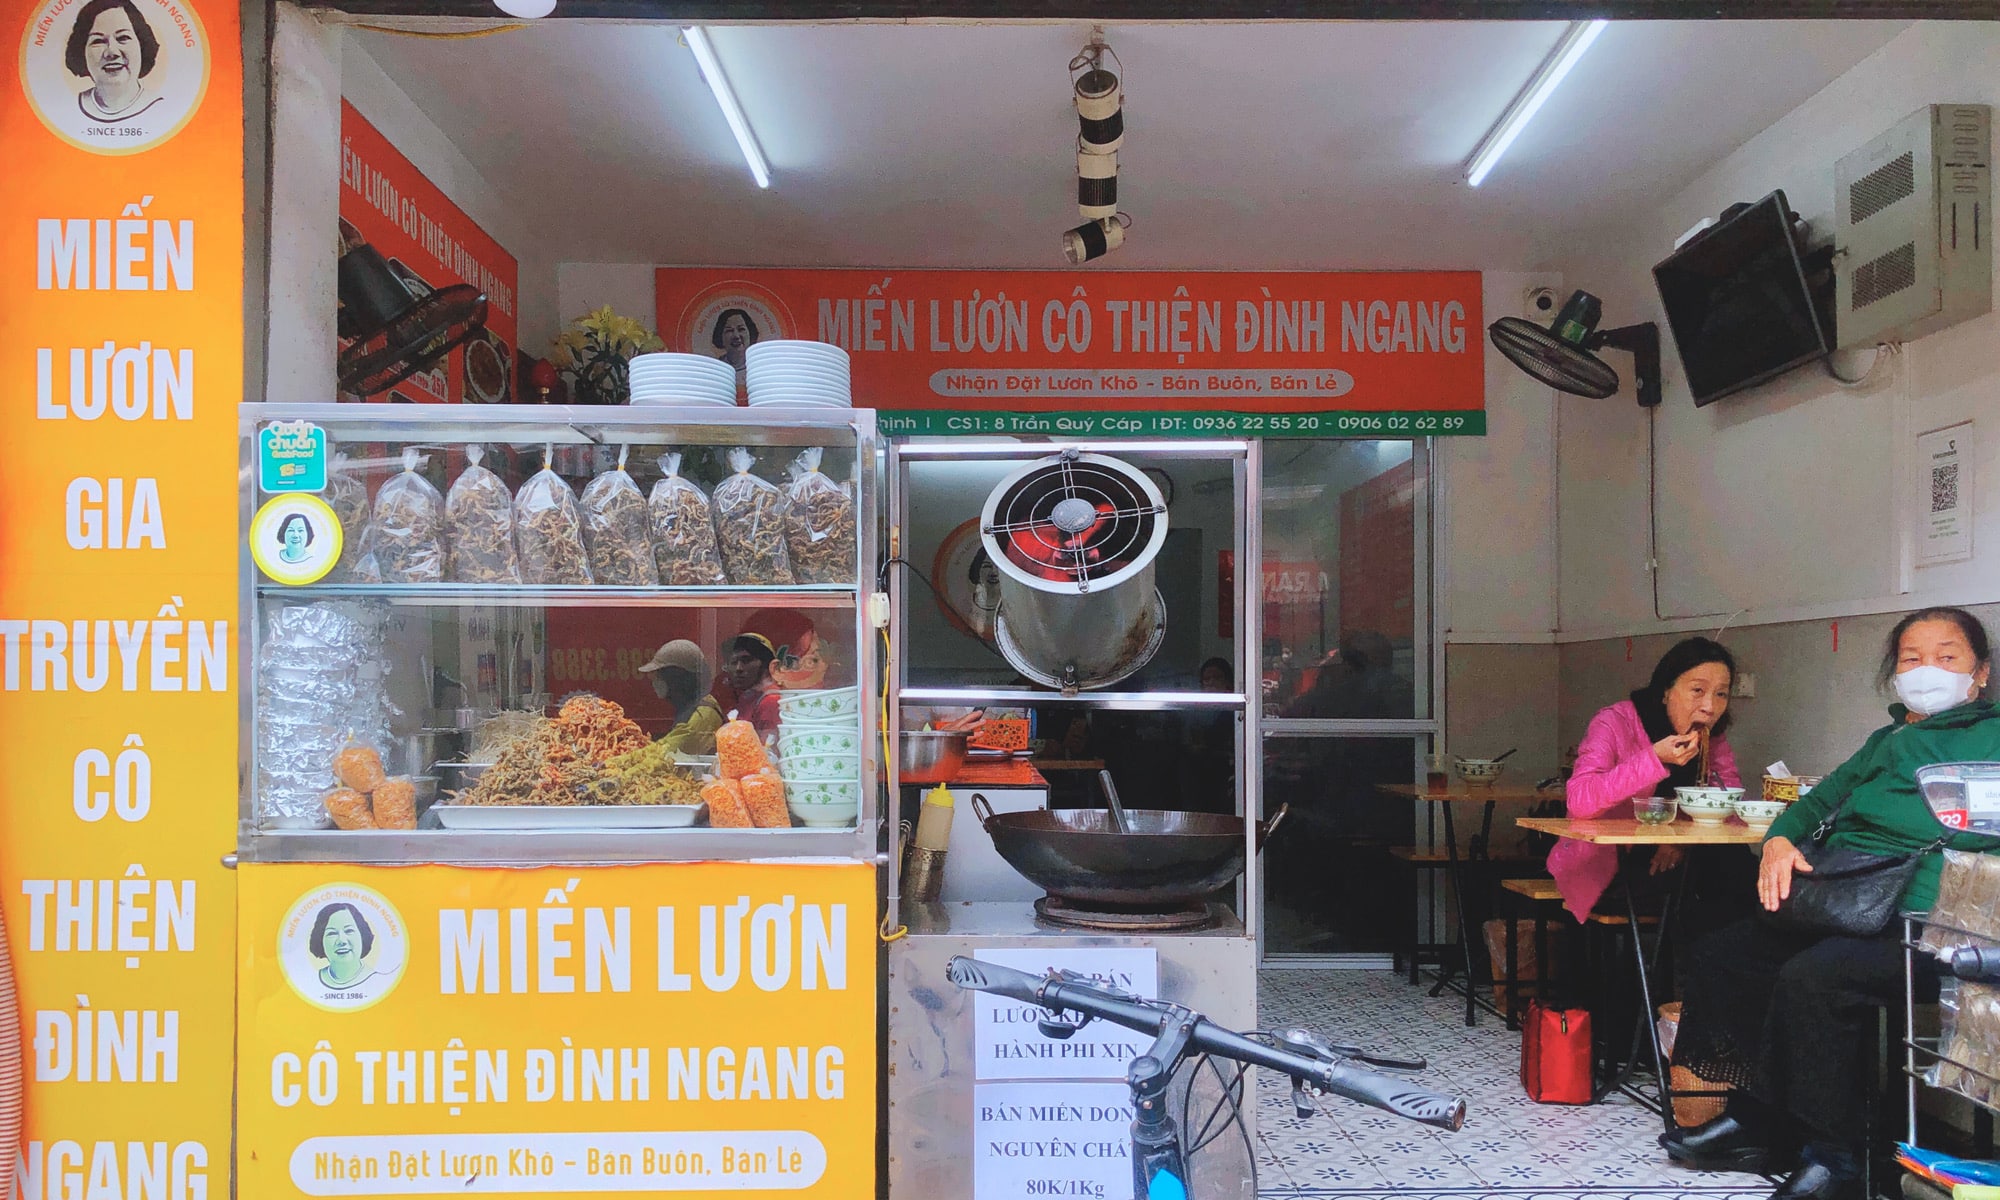 Miến lươn Cô Thiện - Hương vị gia truyền gần 40 năm tại Hà Nội